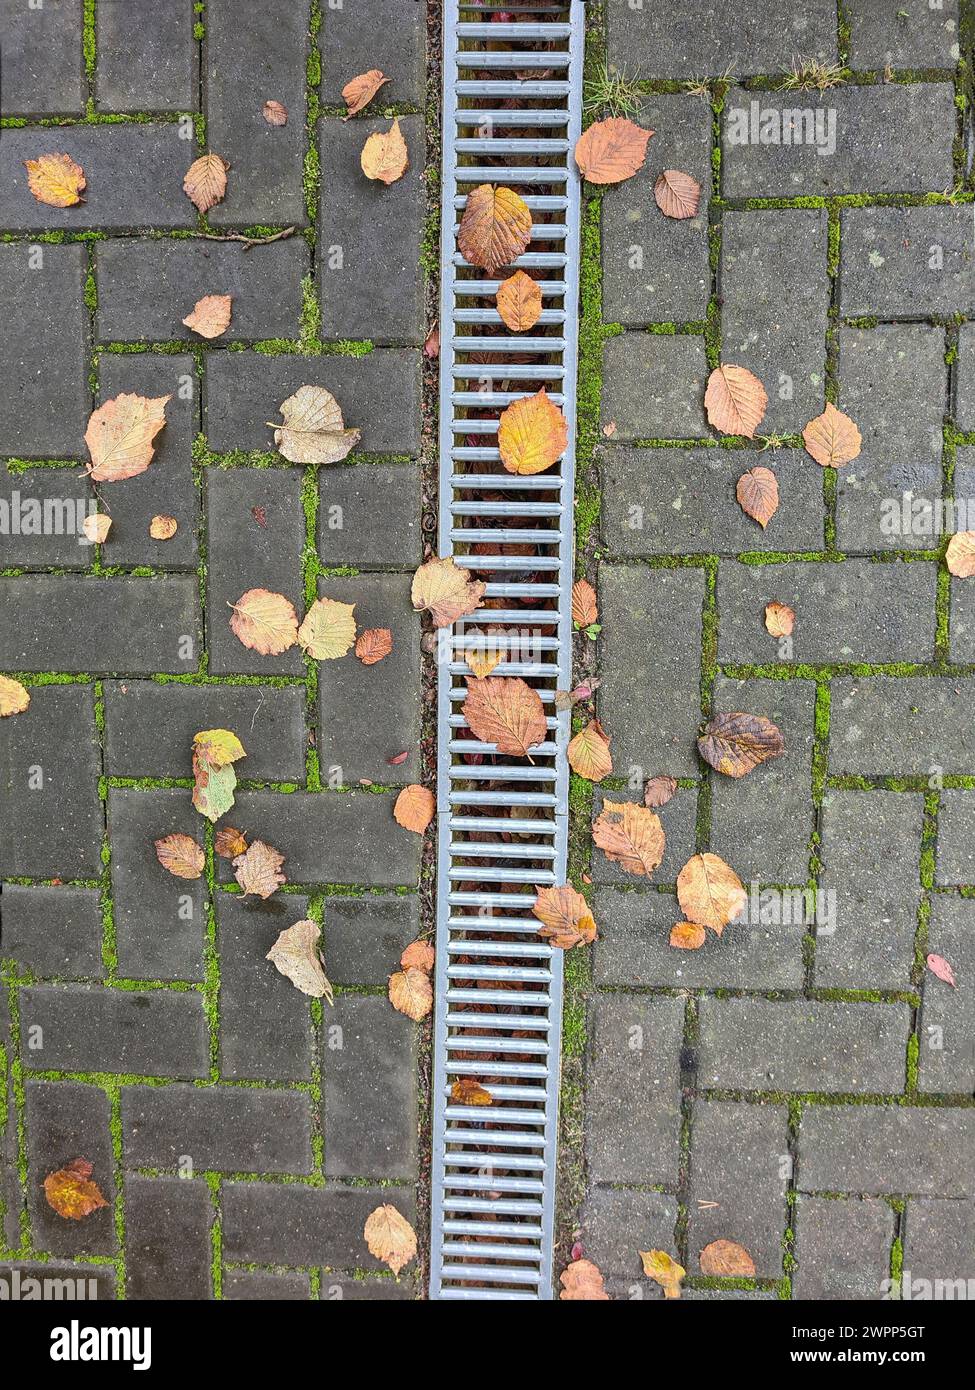 Varie foglie autunnali colorate si trovano su giunti ricoperti di muschio delle pietre di pavimentazione, la griglia galvanizzata dello scarico della pioggia attraversa il centro dell'immagine in formato verticale Foto Stock